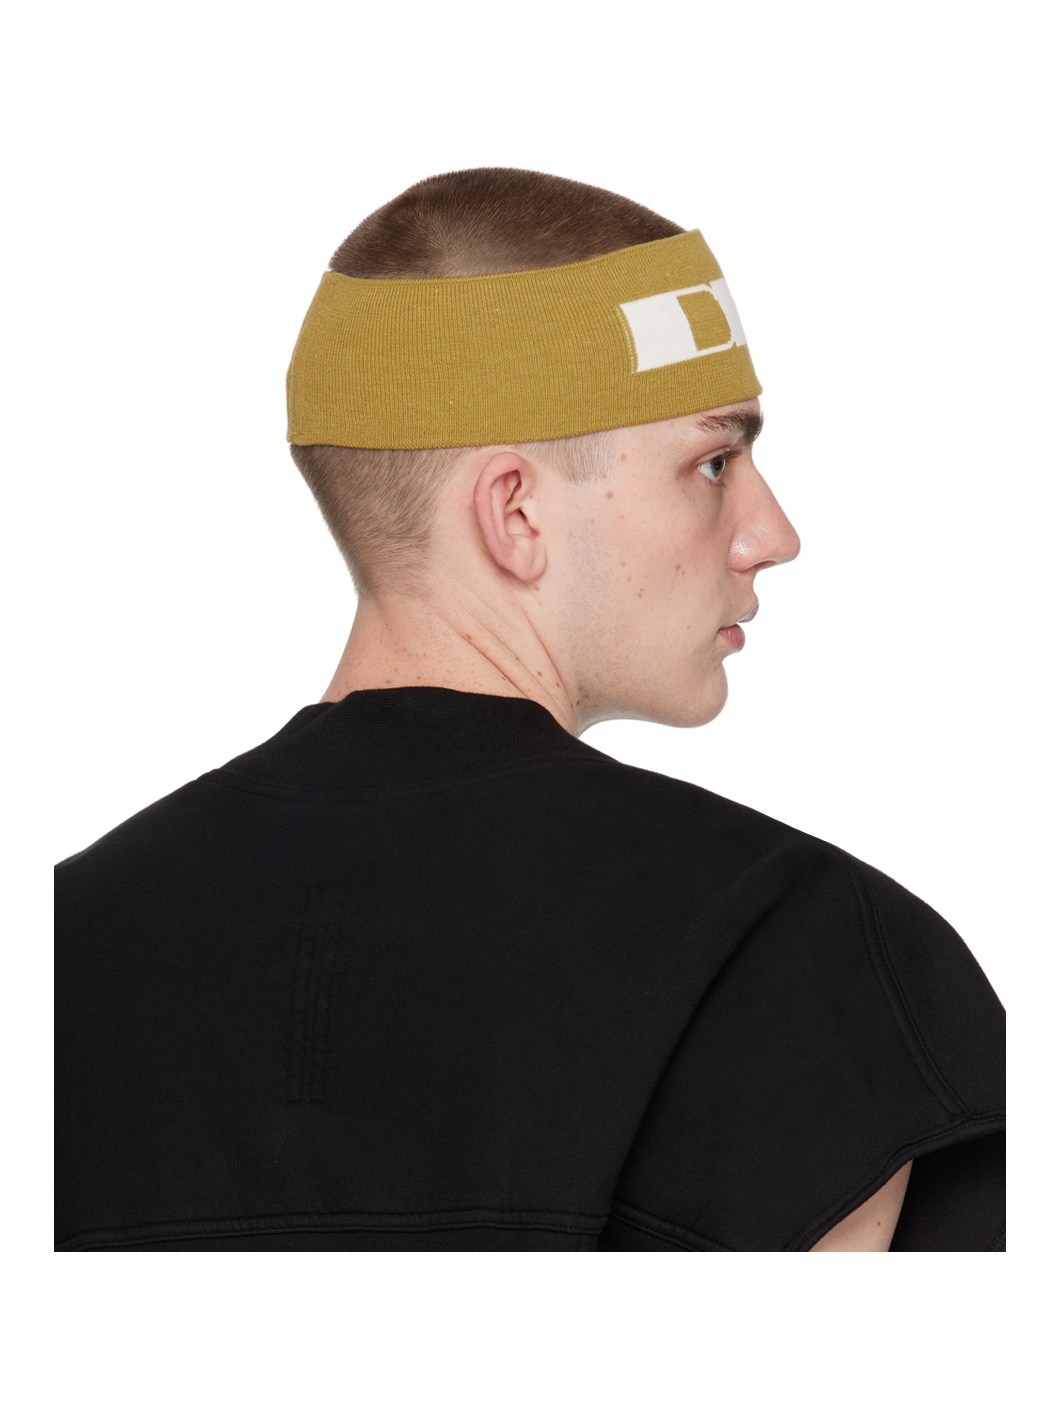 Yellow 'DRKR' Headband - 3